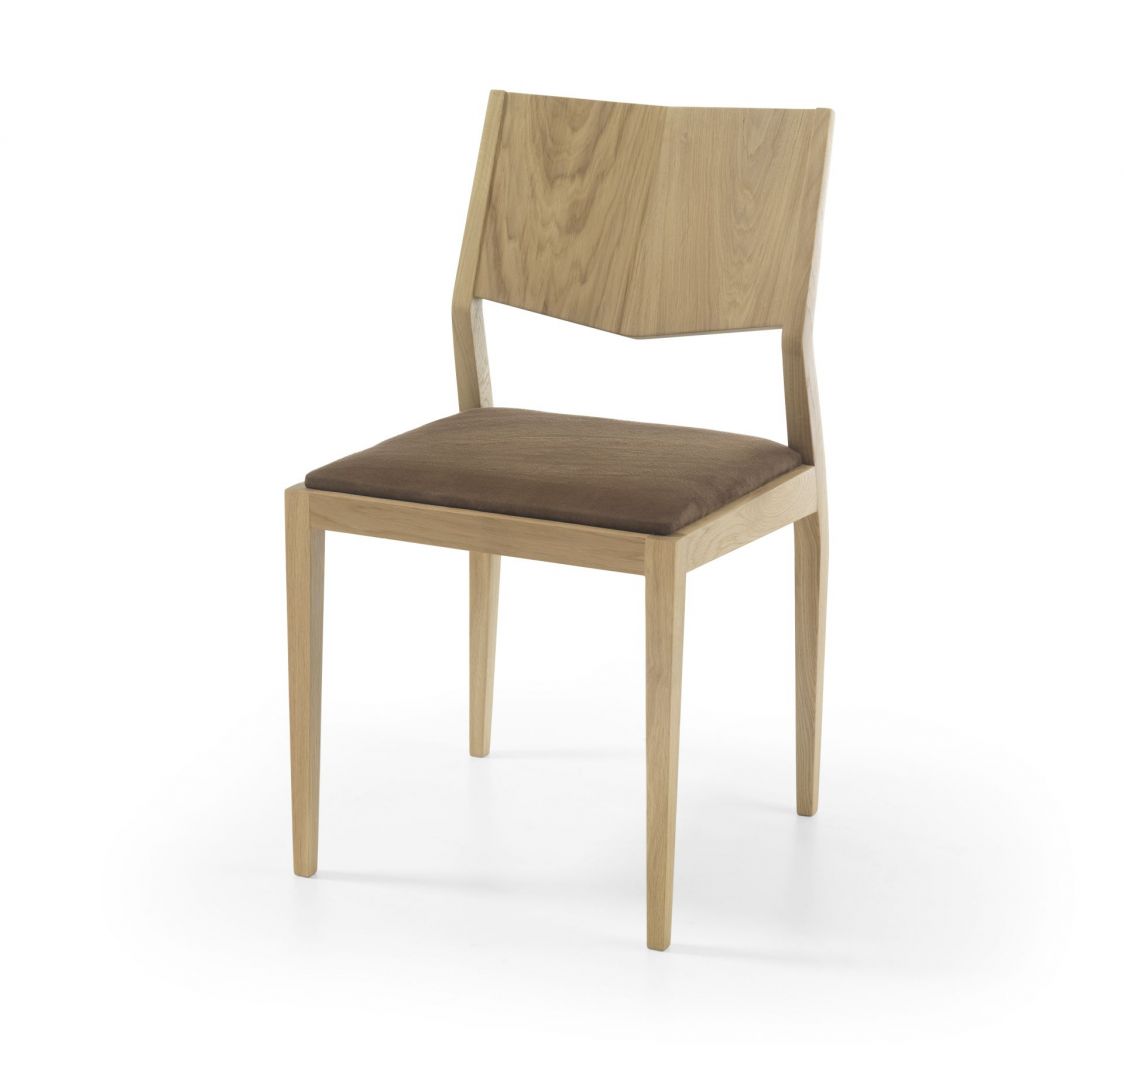 Marcato to model krzesła, który w doskonały sposób zawiera w sobie prostotę oraz innowacyjność. Oparcie zostało zaprojektowane z myślą o wygodzie, nie rezygnując z nawiązania do nowoczesnego włoskiego designu. Fot. Congrazio